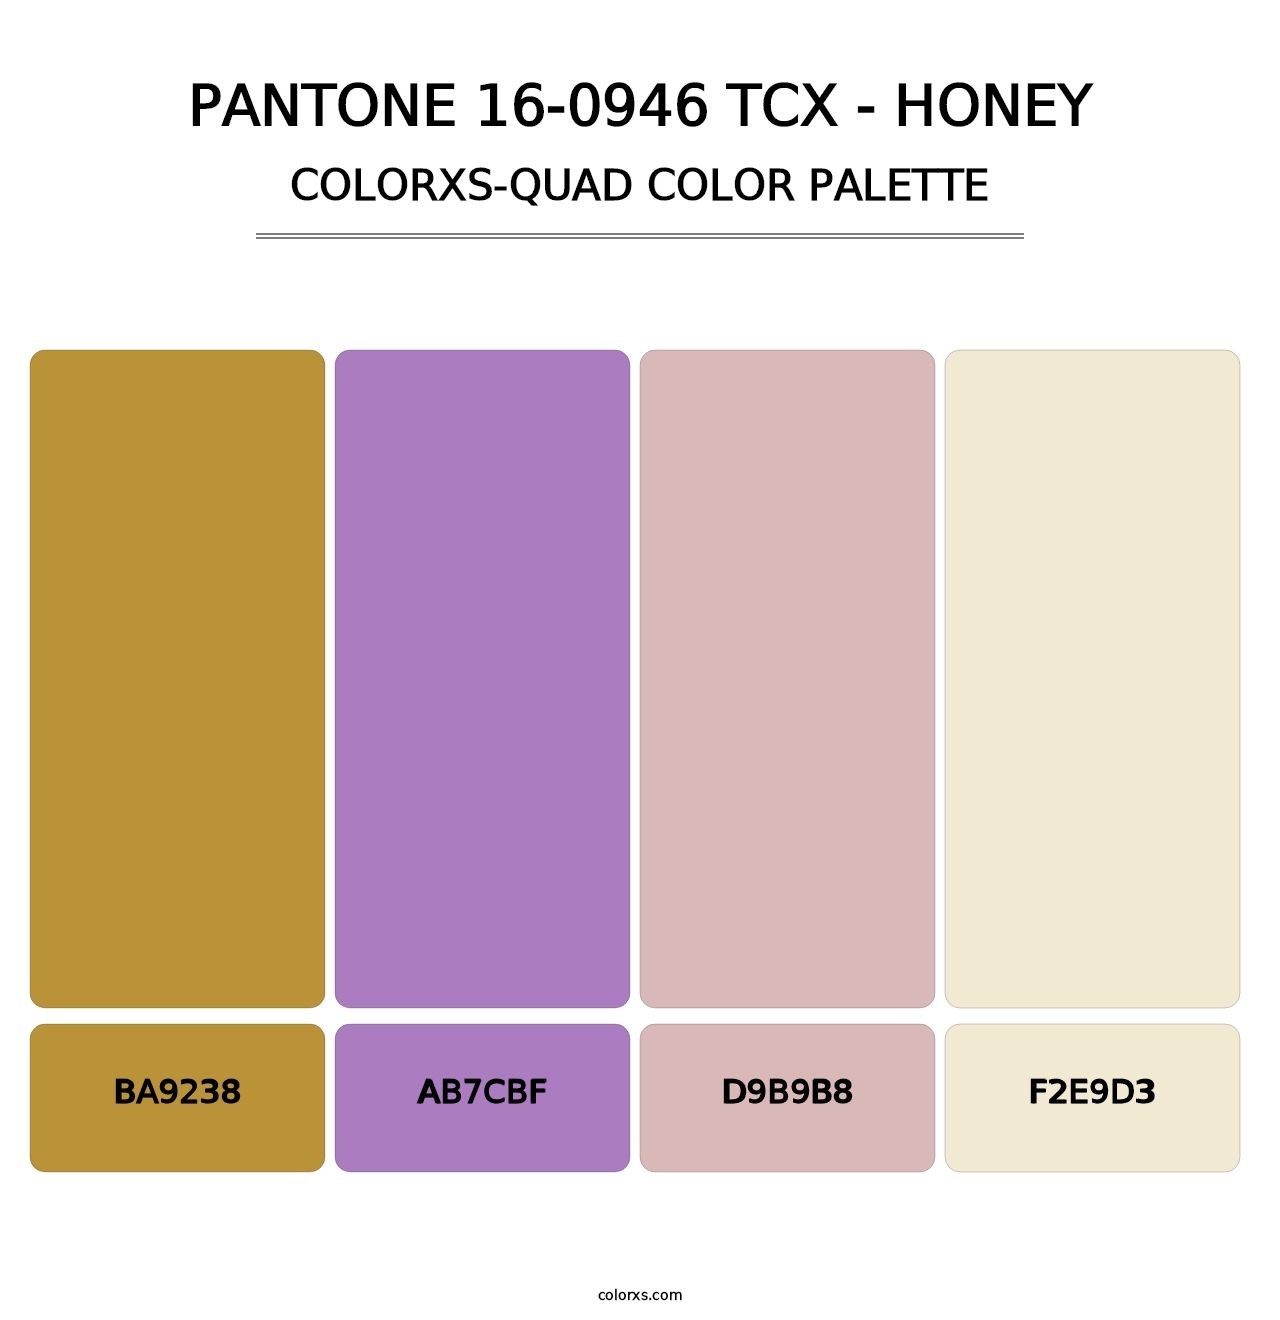 PANTONE 16-0946 TCX - Honey - Colorxs Quad Palette